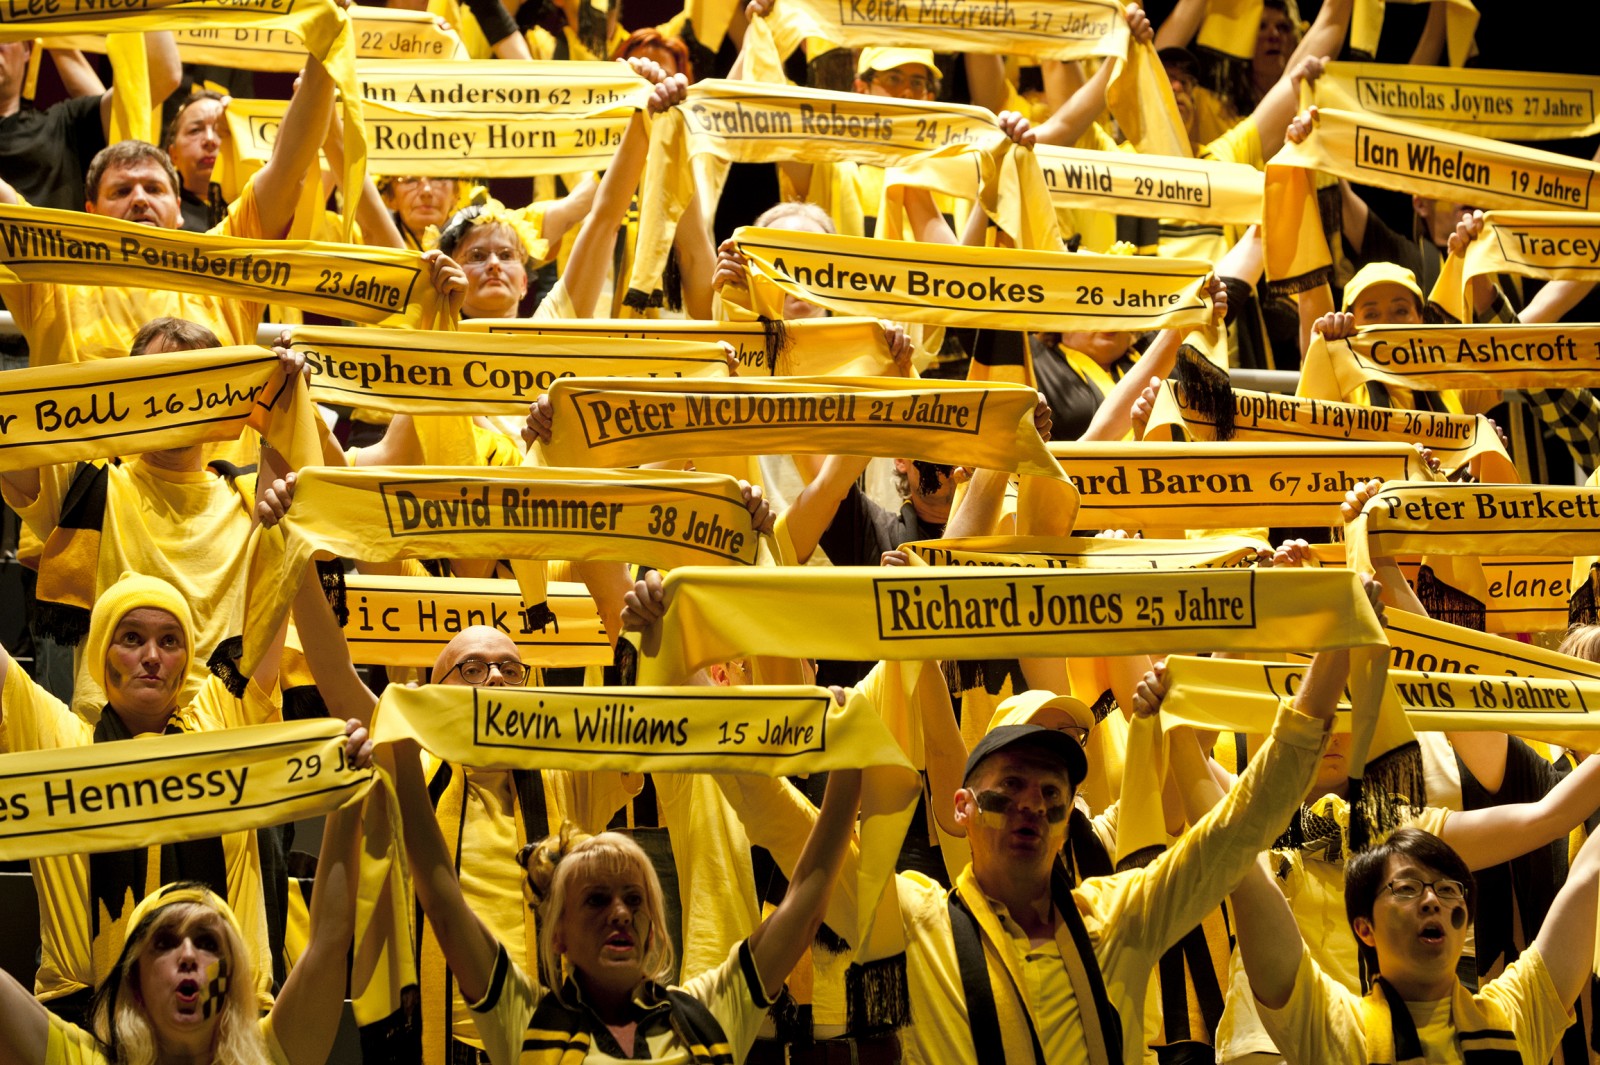 Hoch der Schal, die Borussia soll leben! Szene aus dem Dortmunder Fußball-Oratorium "Fangesänge".